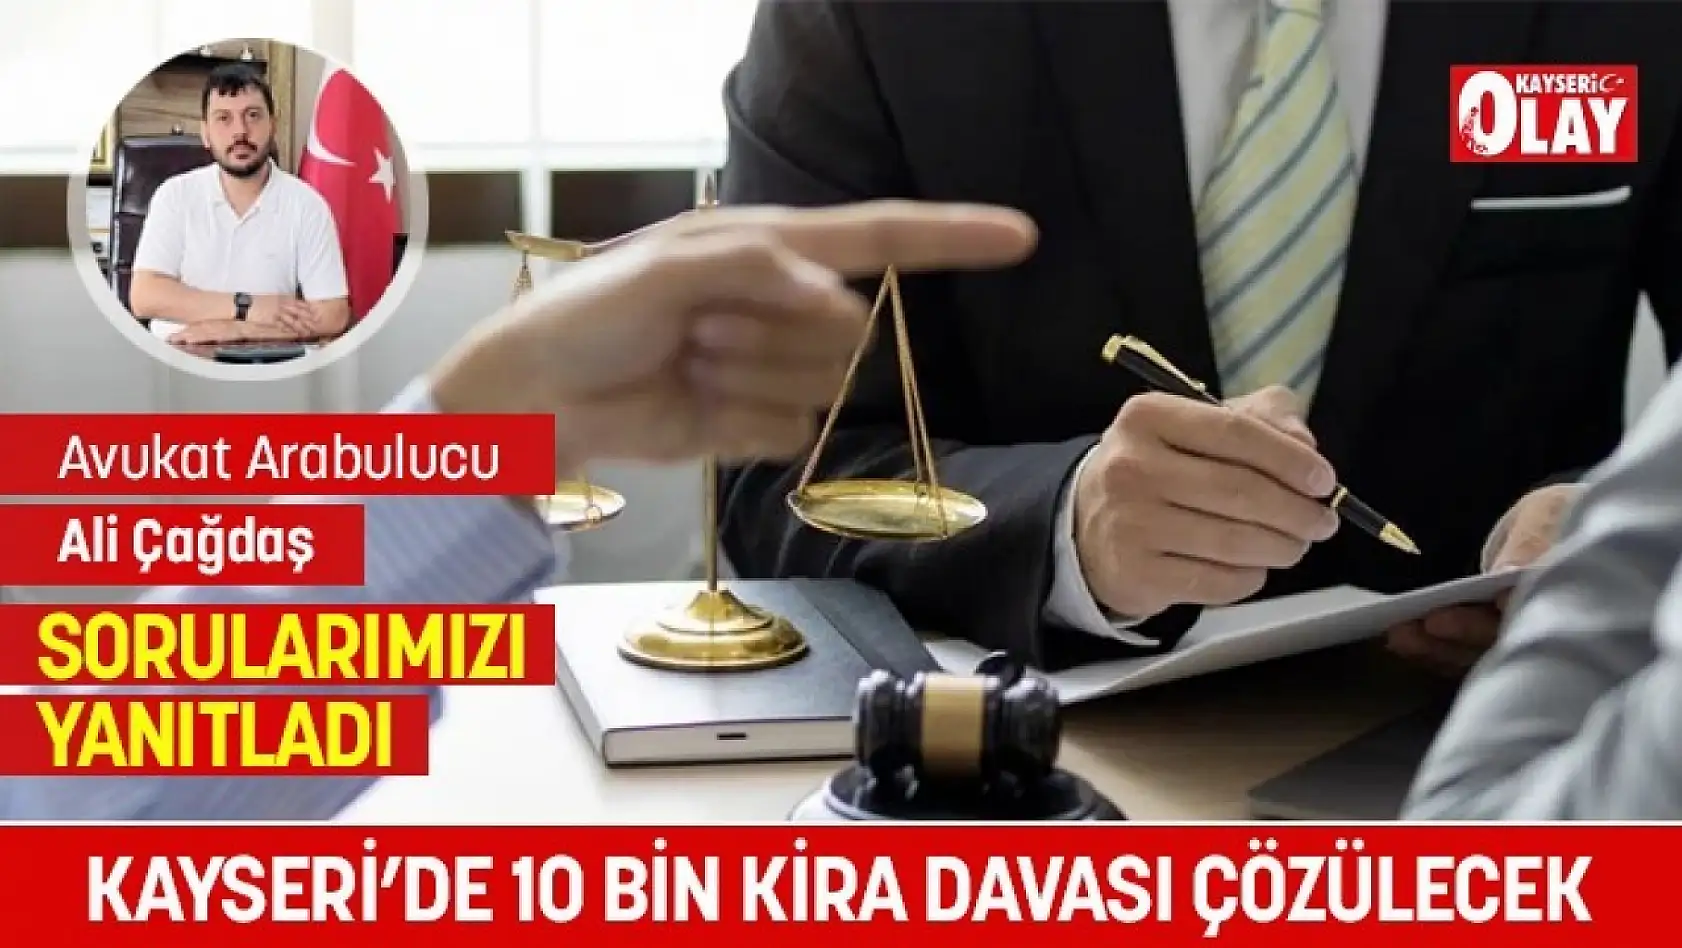 Kayseri'de ev sahibi-kiracı kavgası: 10 bin dava çözüm bekliyor!